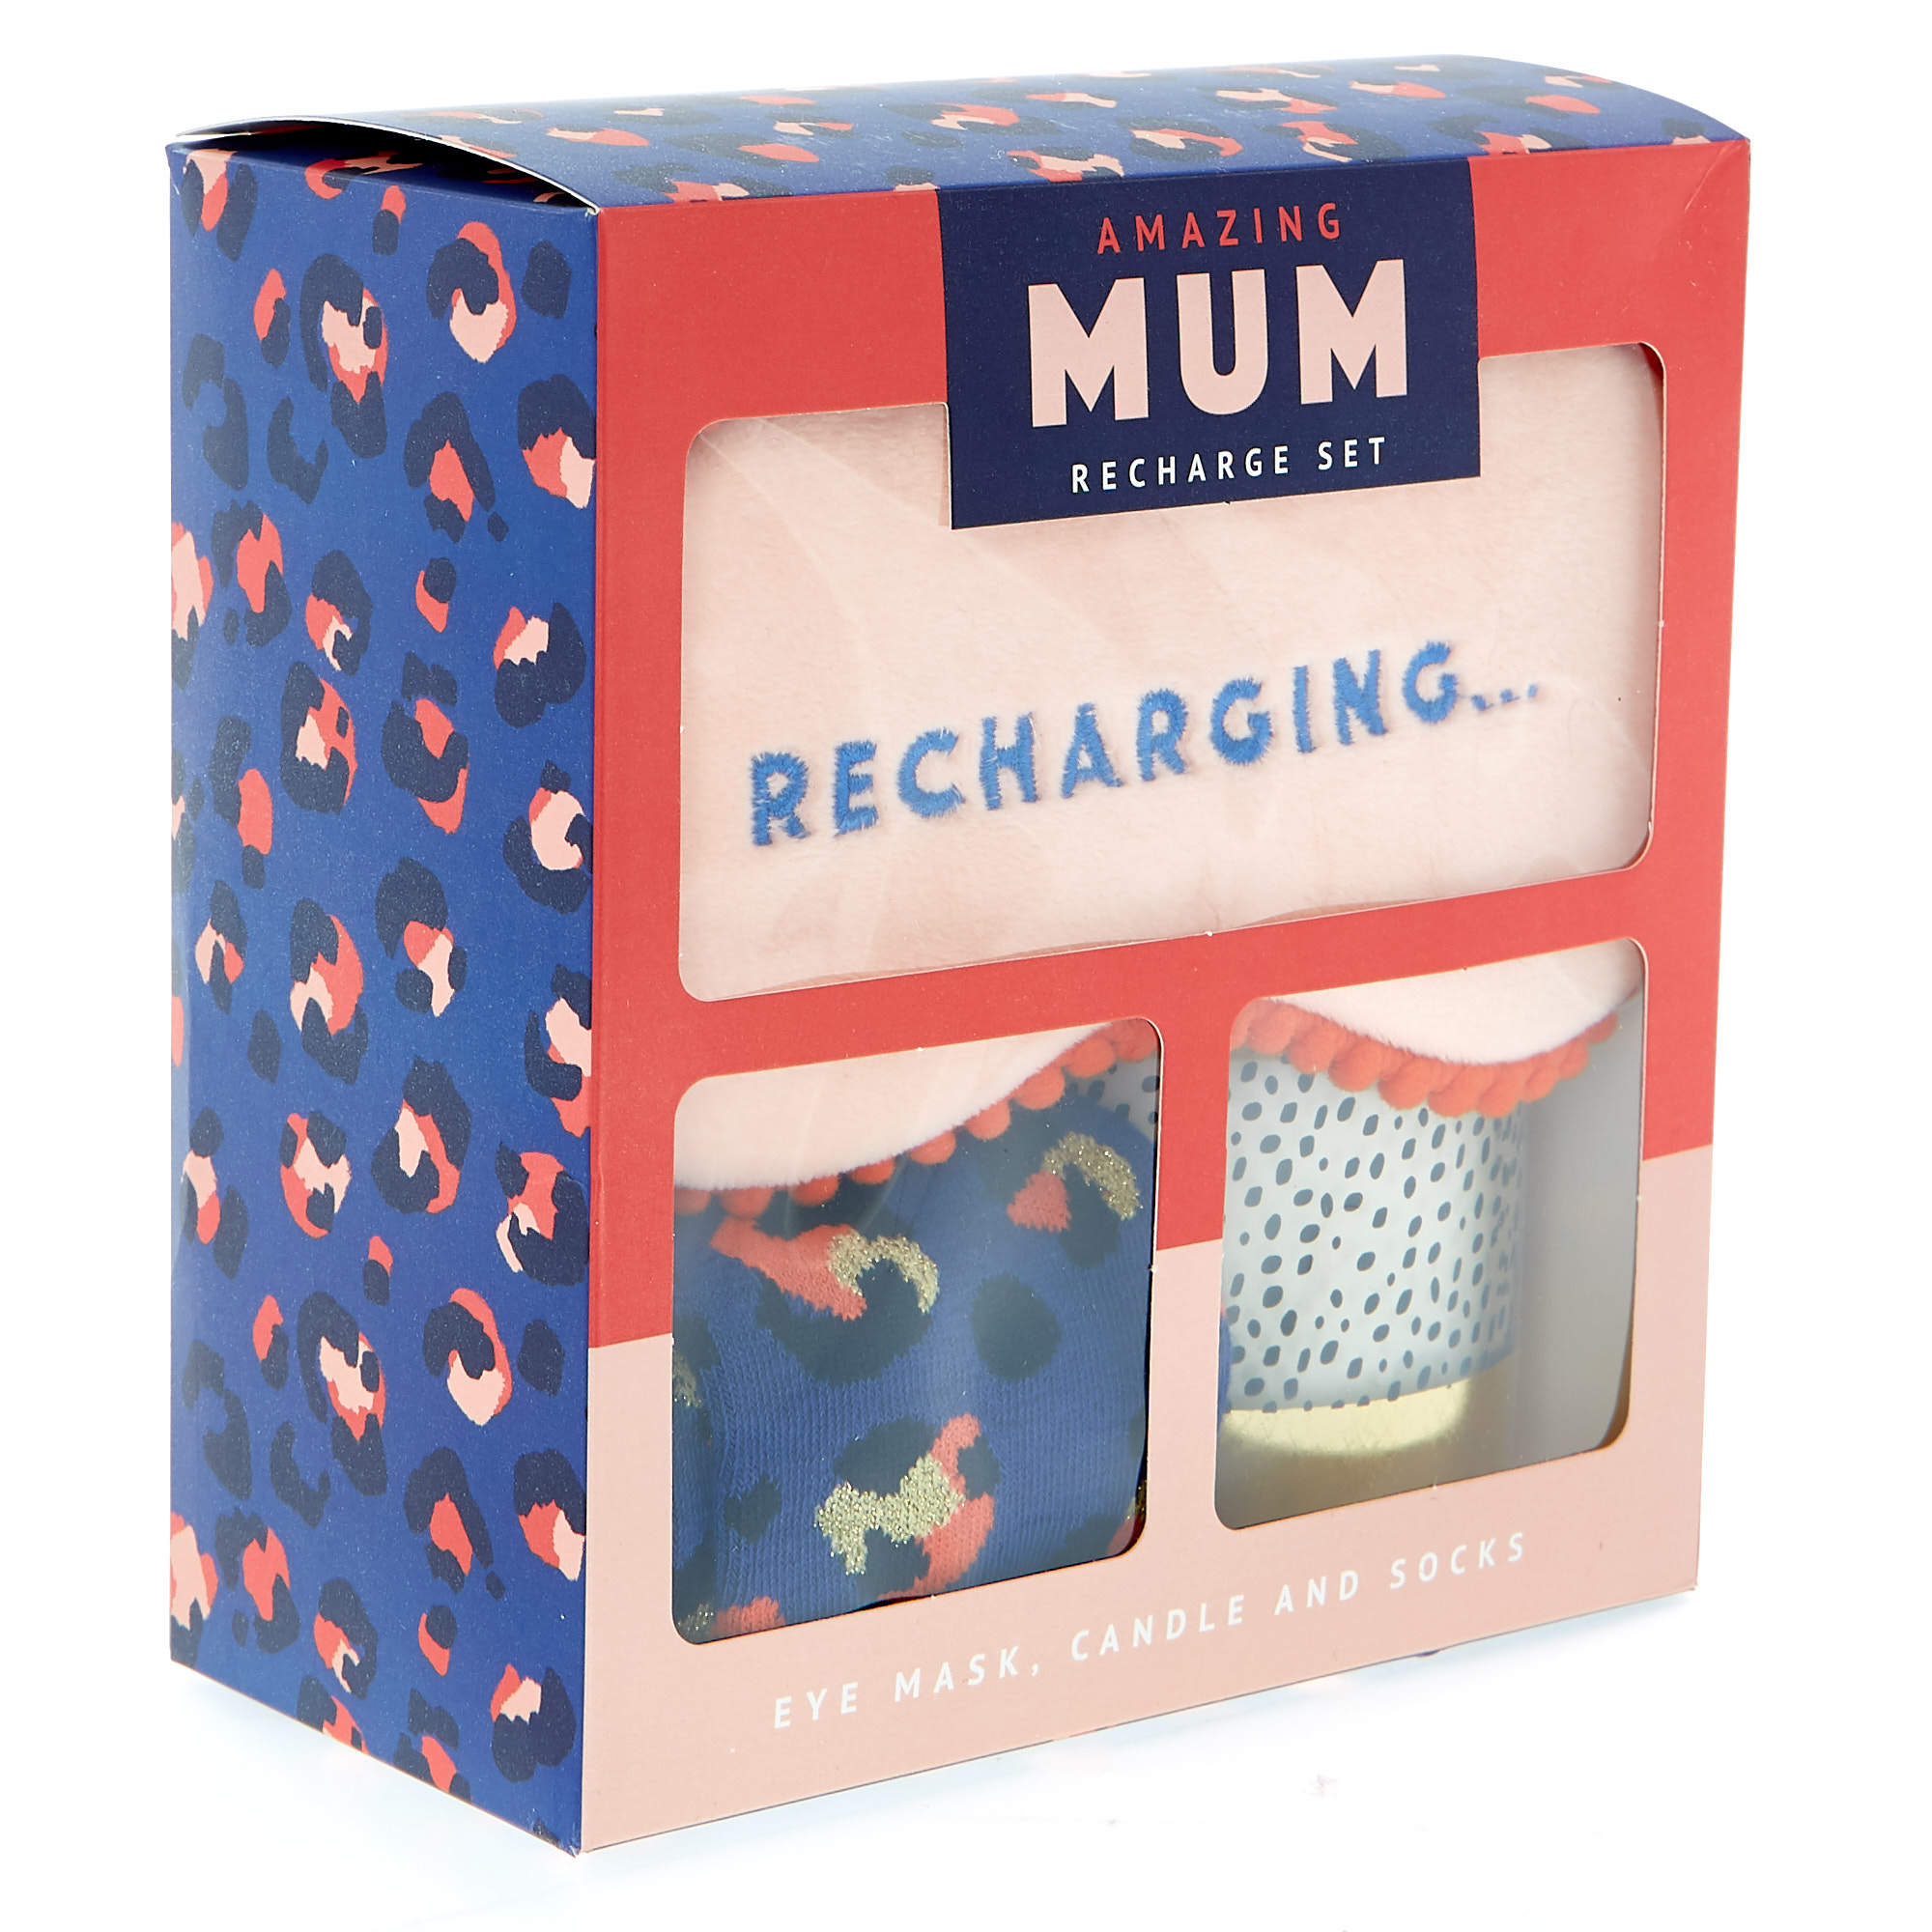 Amazing Mum Recharge Gift Set